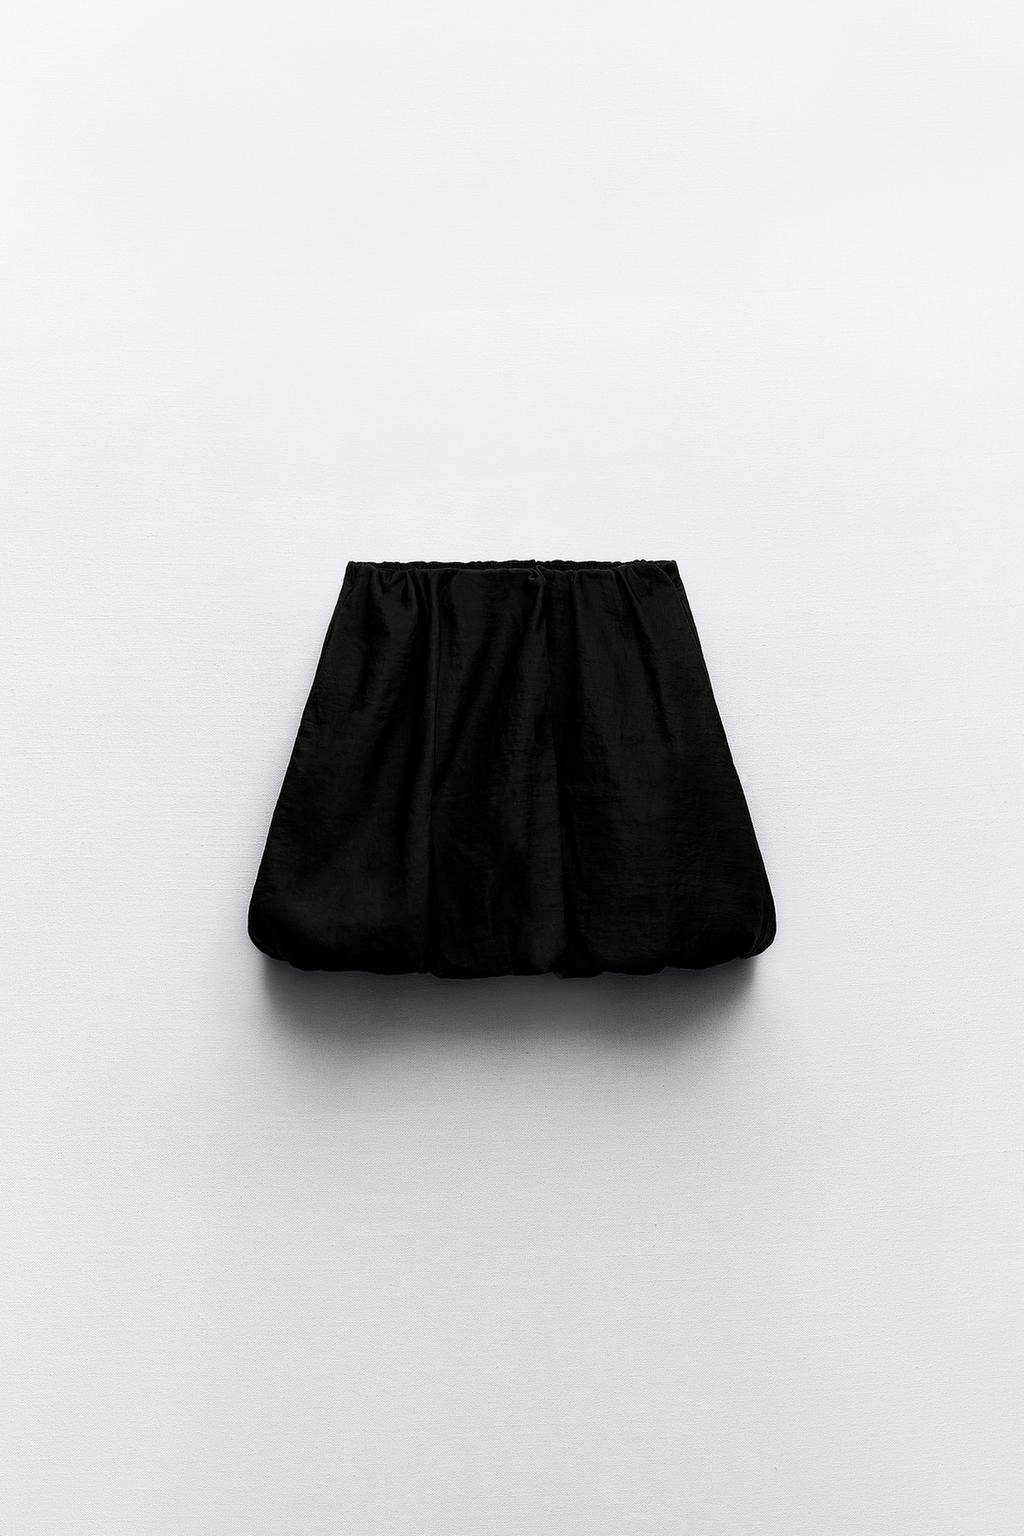 Falda mini globo de Zara  22,95 euros